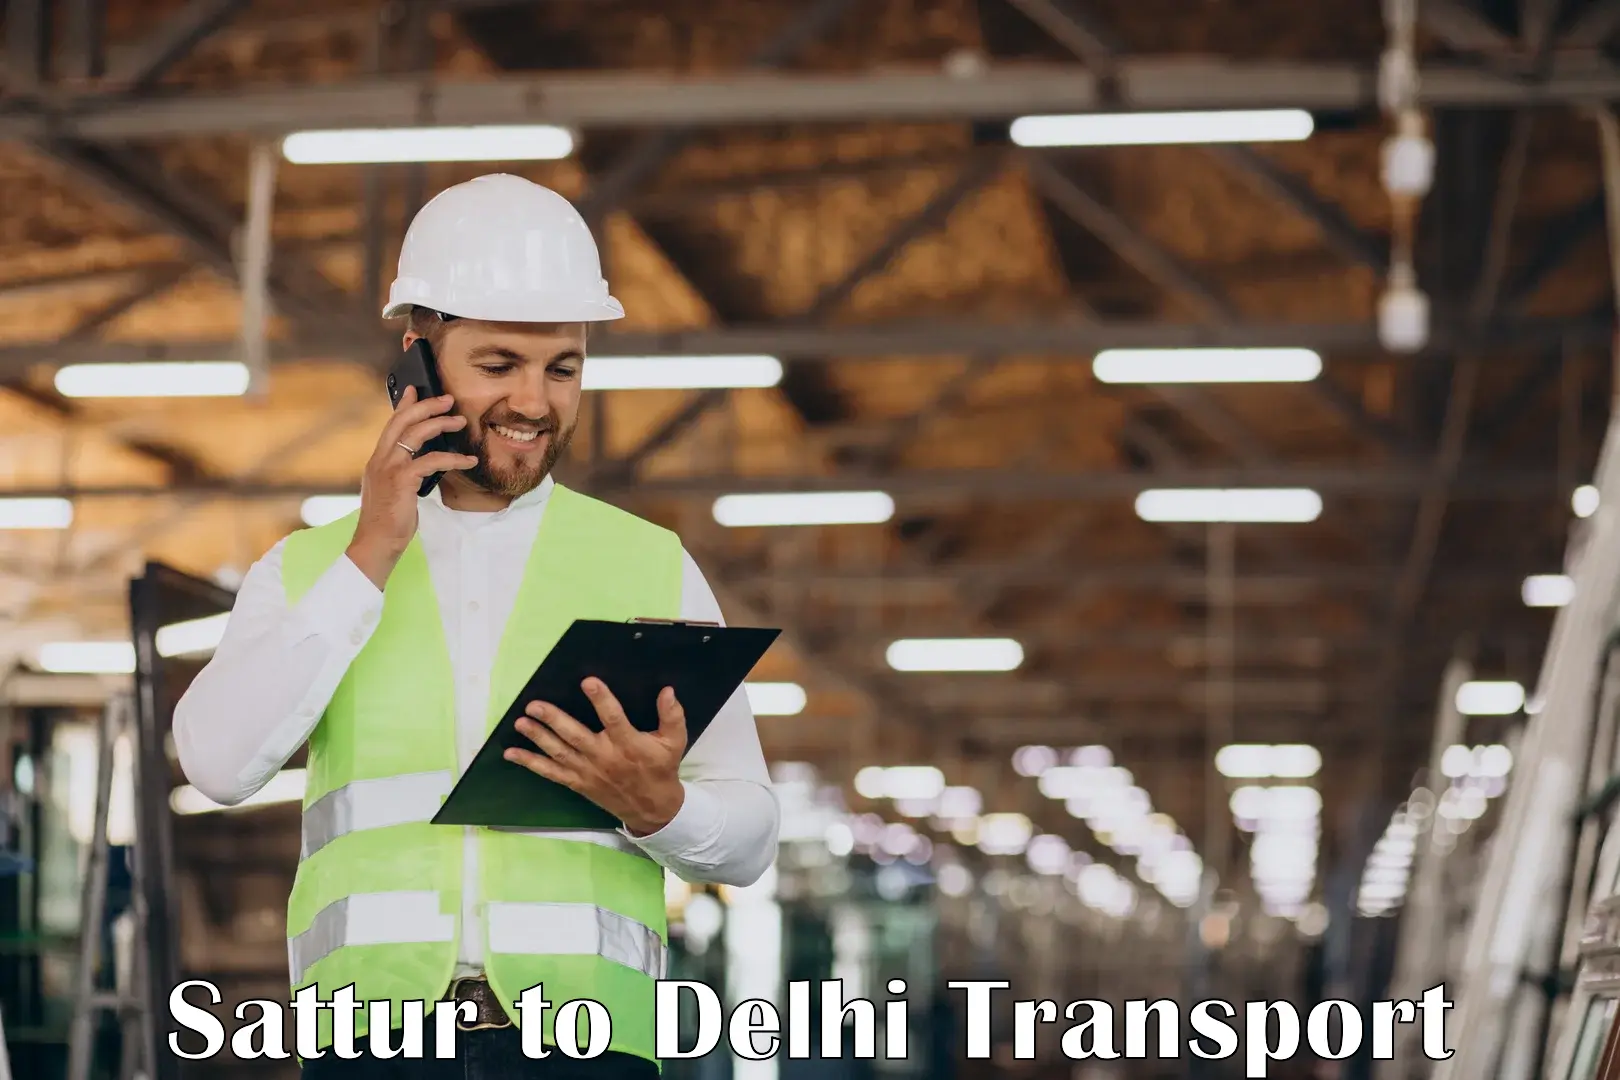 Transport in sharing Sattur to East Delhi